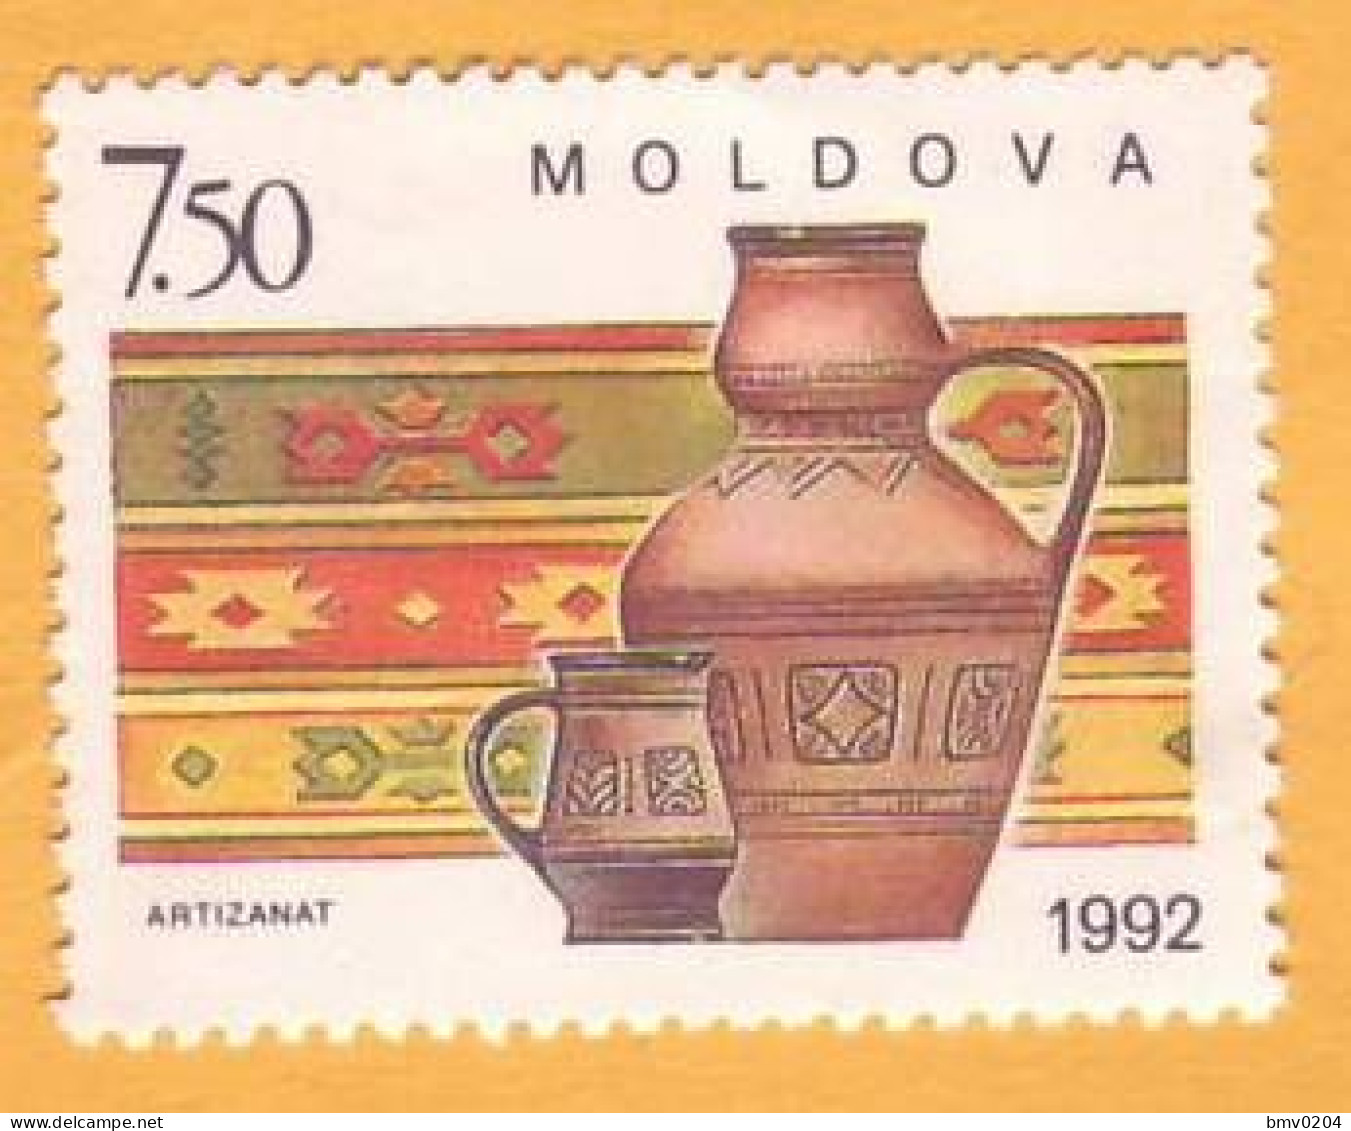 1992 Moldova Moldavie Moldau  Artizanat  1v Mint - Moldavie